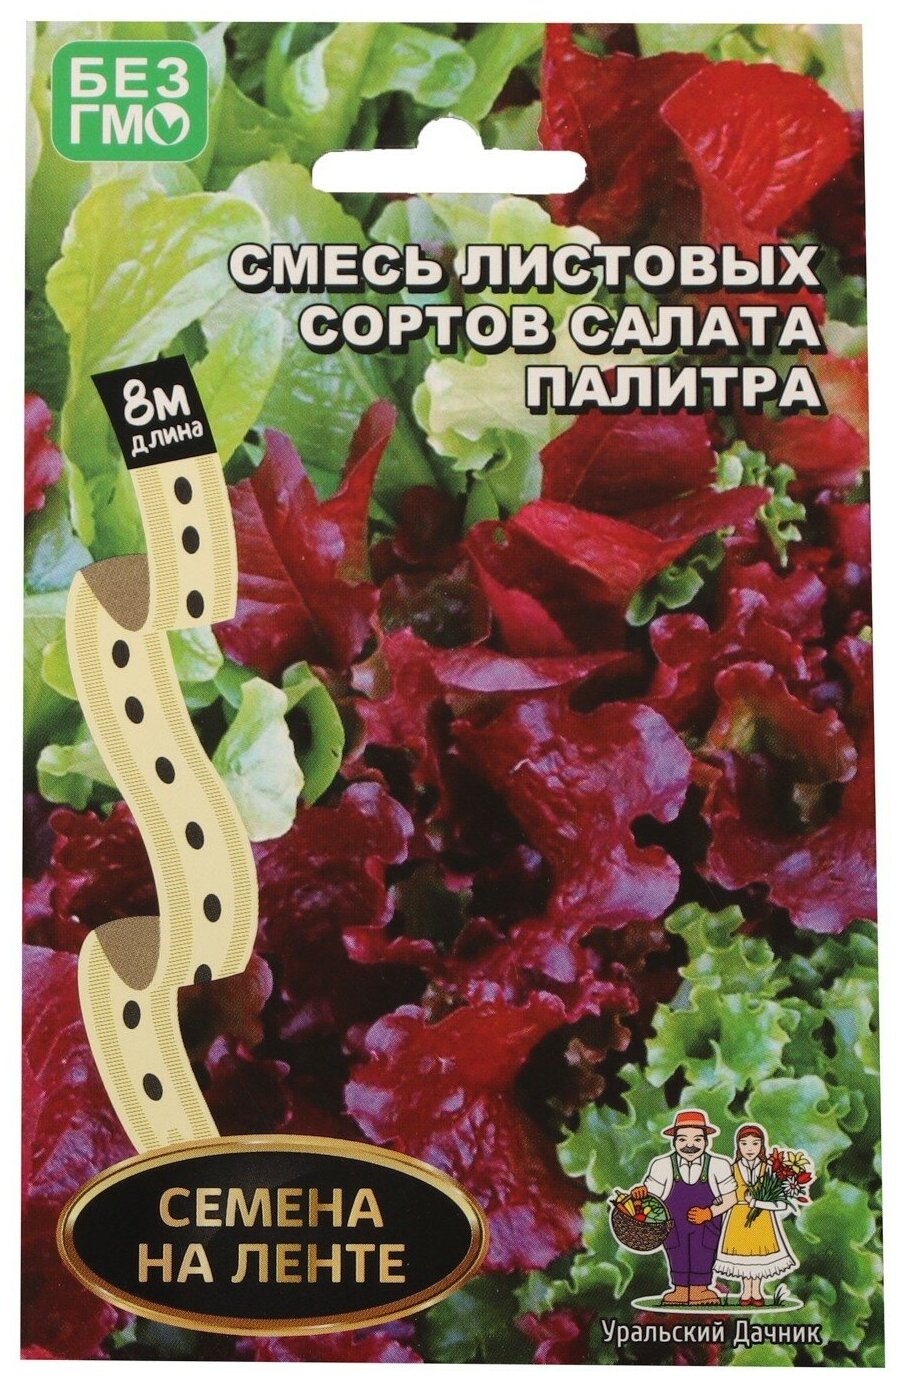 Семена Уральский дачник Смесь листовых сортов салата Палитра лента 8 м